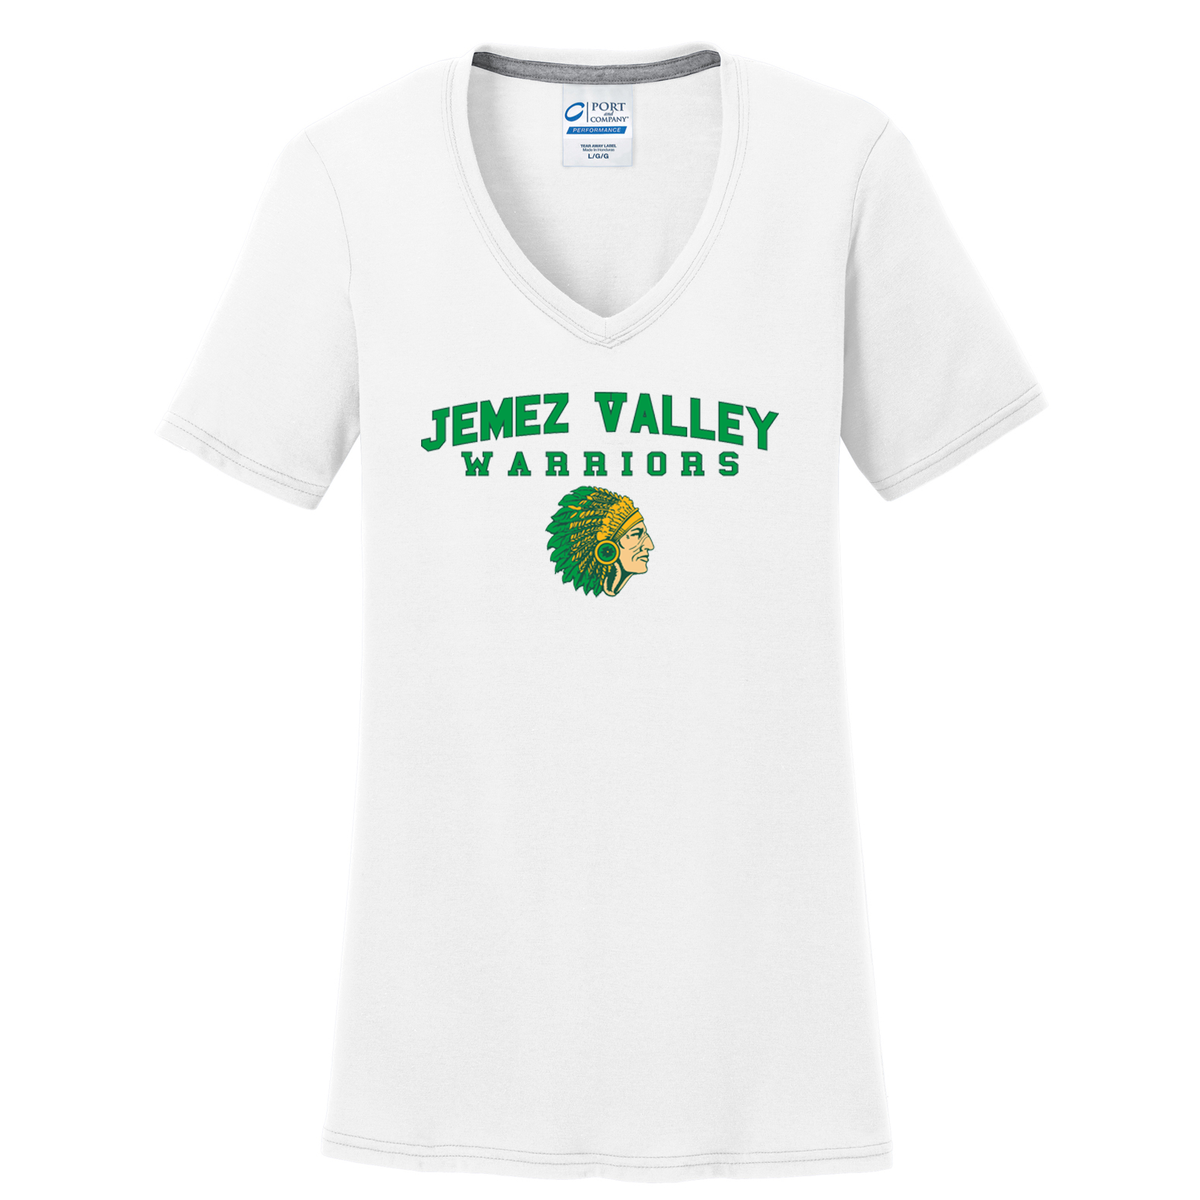 Jemez Valley Warriors Women's T-Shirt